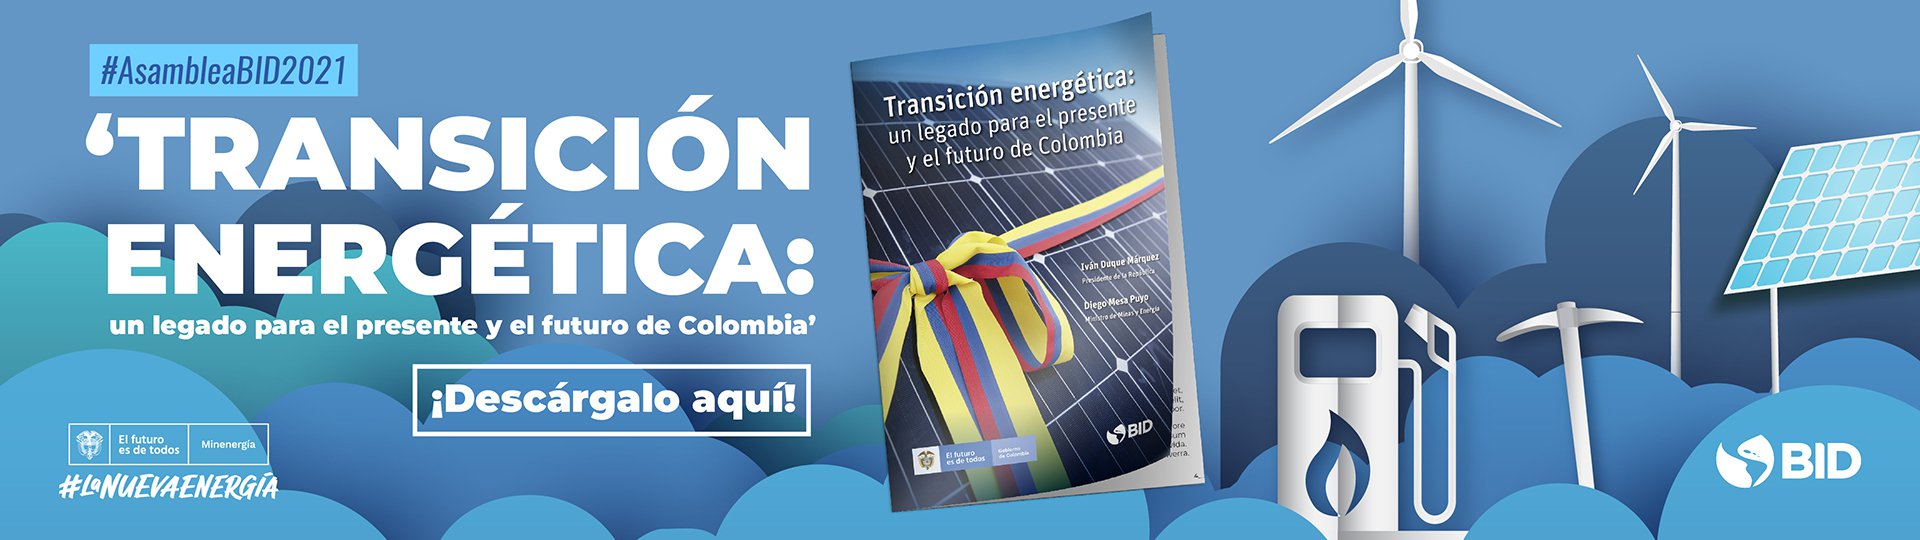 Conoce mas sobre la transición energética de Colombia